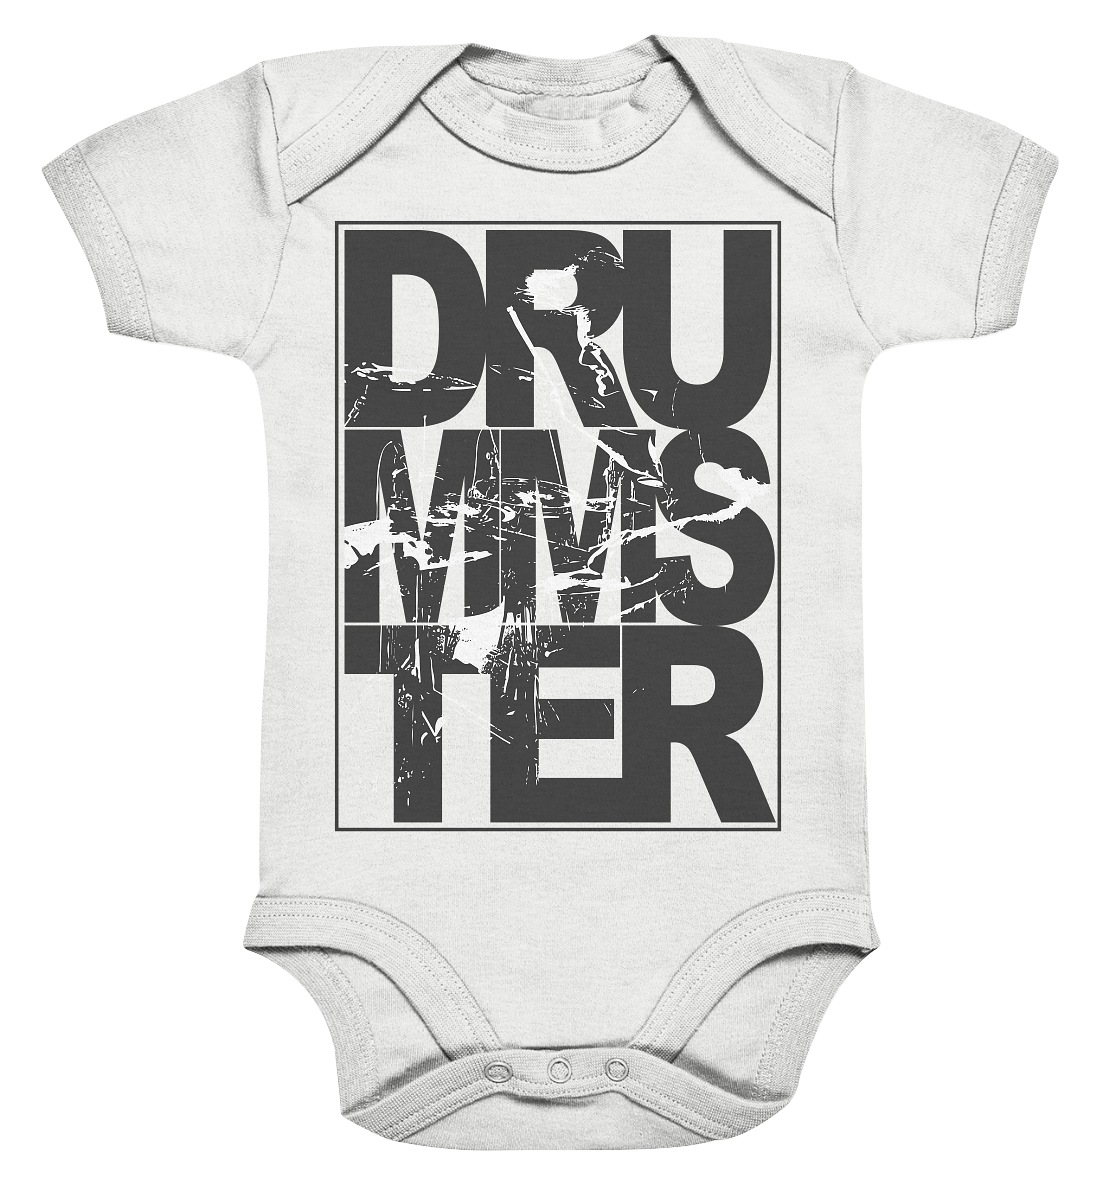 art of drummster v3 - baby bodysuite | white